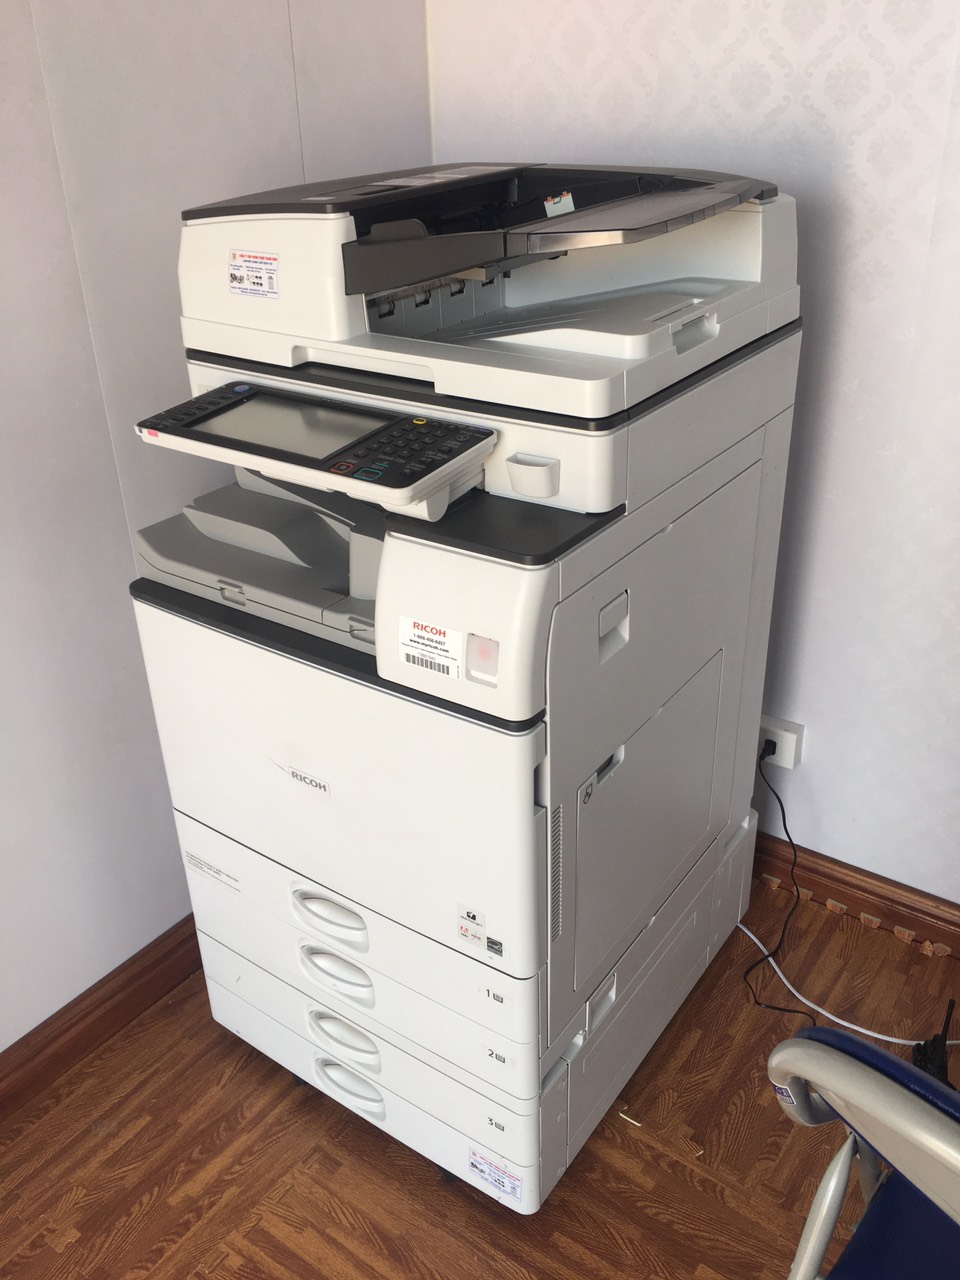 Dịch vụ bán và cho thuê máy Photocopy văn phòng chất lượng cao, giá rẻ tại Hà Nội và các tỉnh miền Bắc